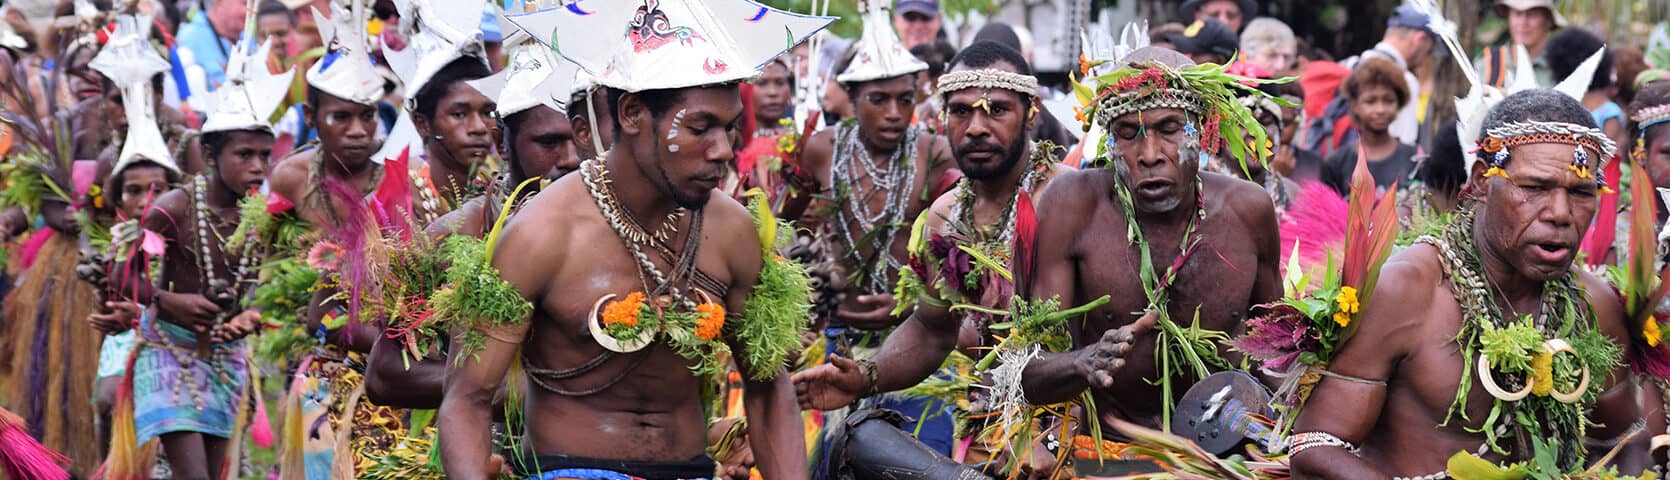 Papua New Guinea1